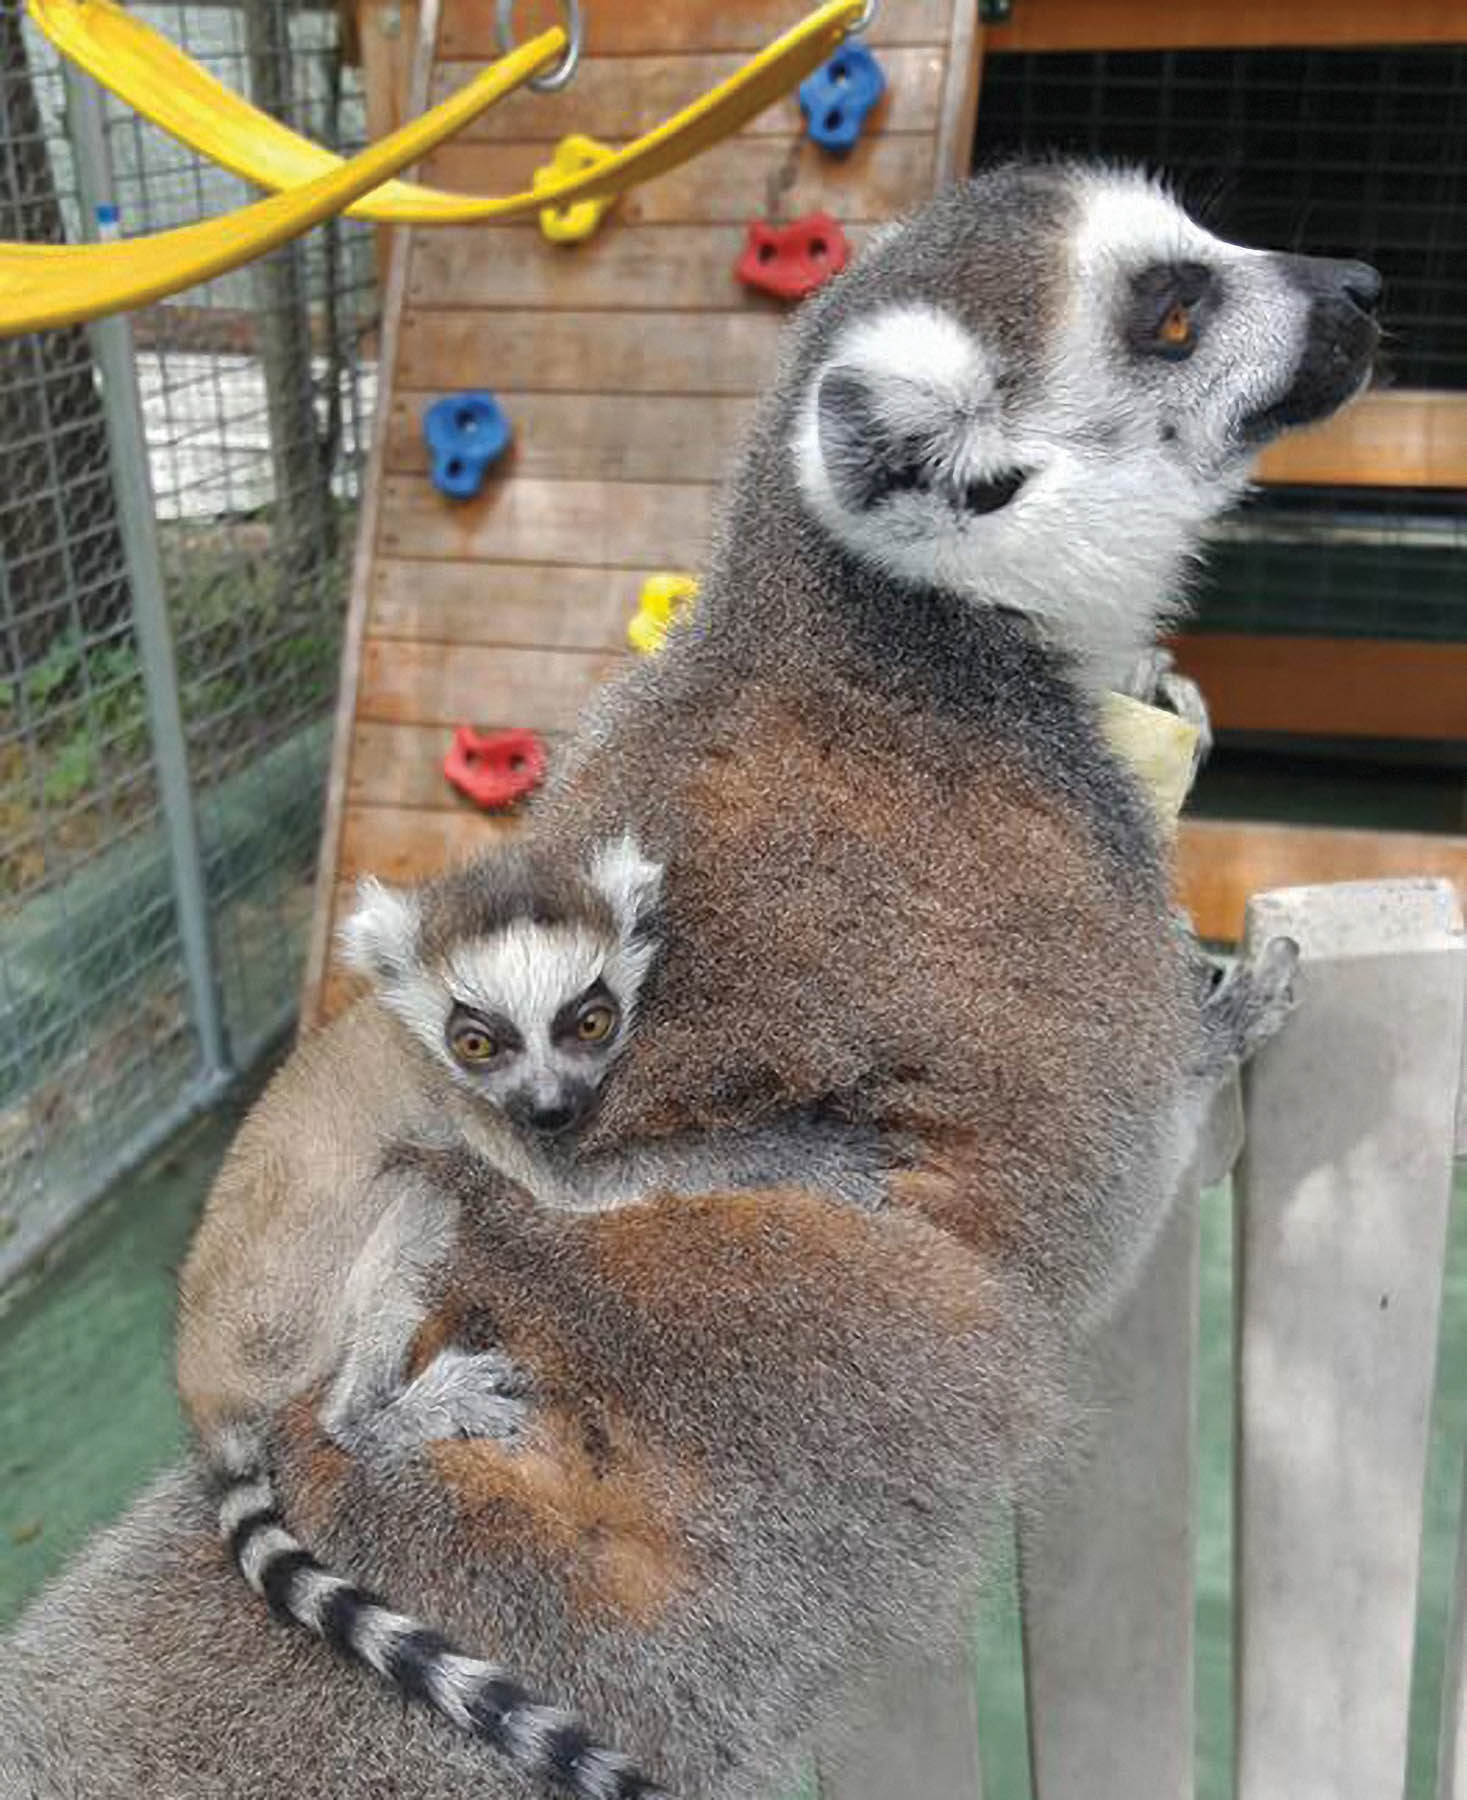 Lemur and baby lemur.